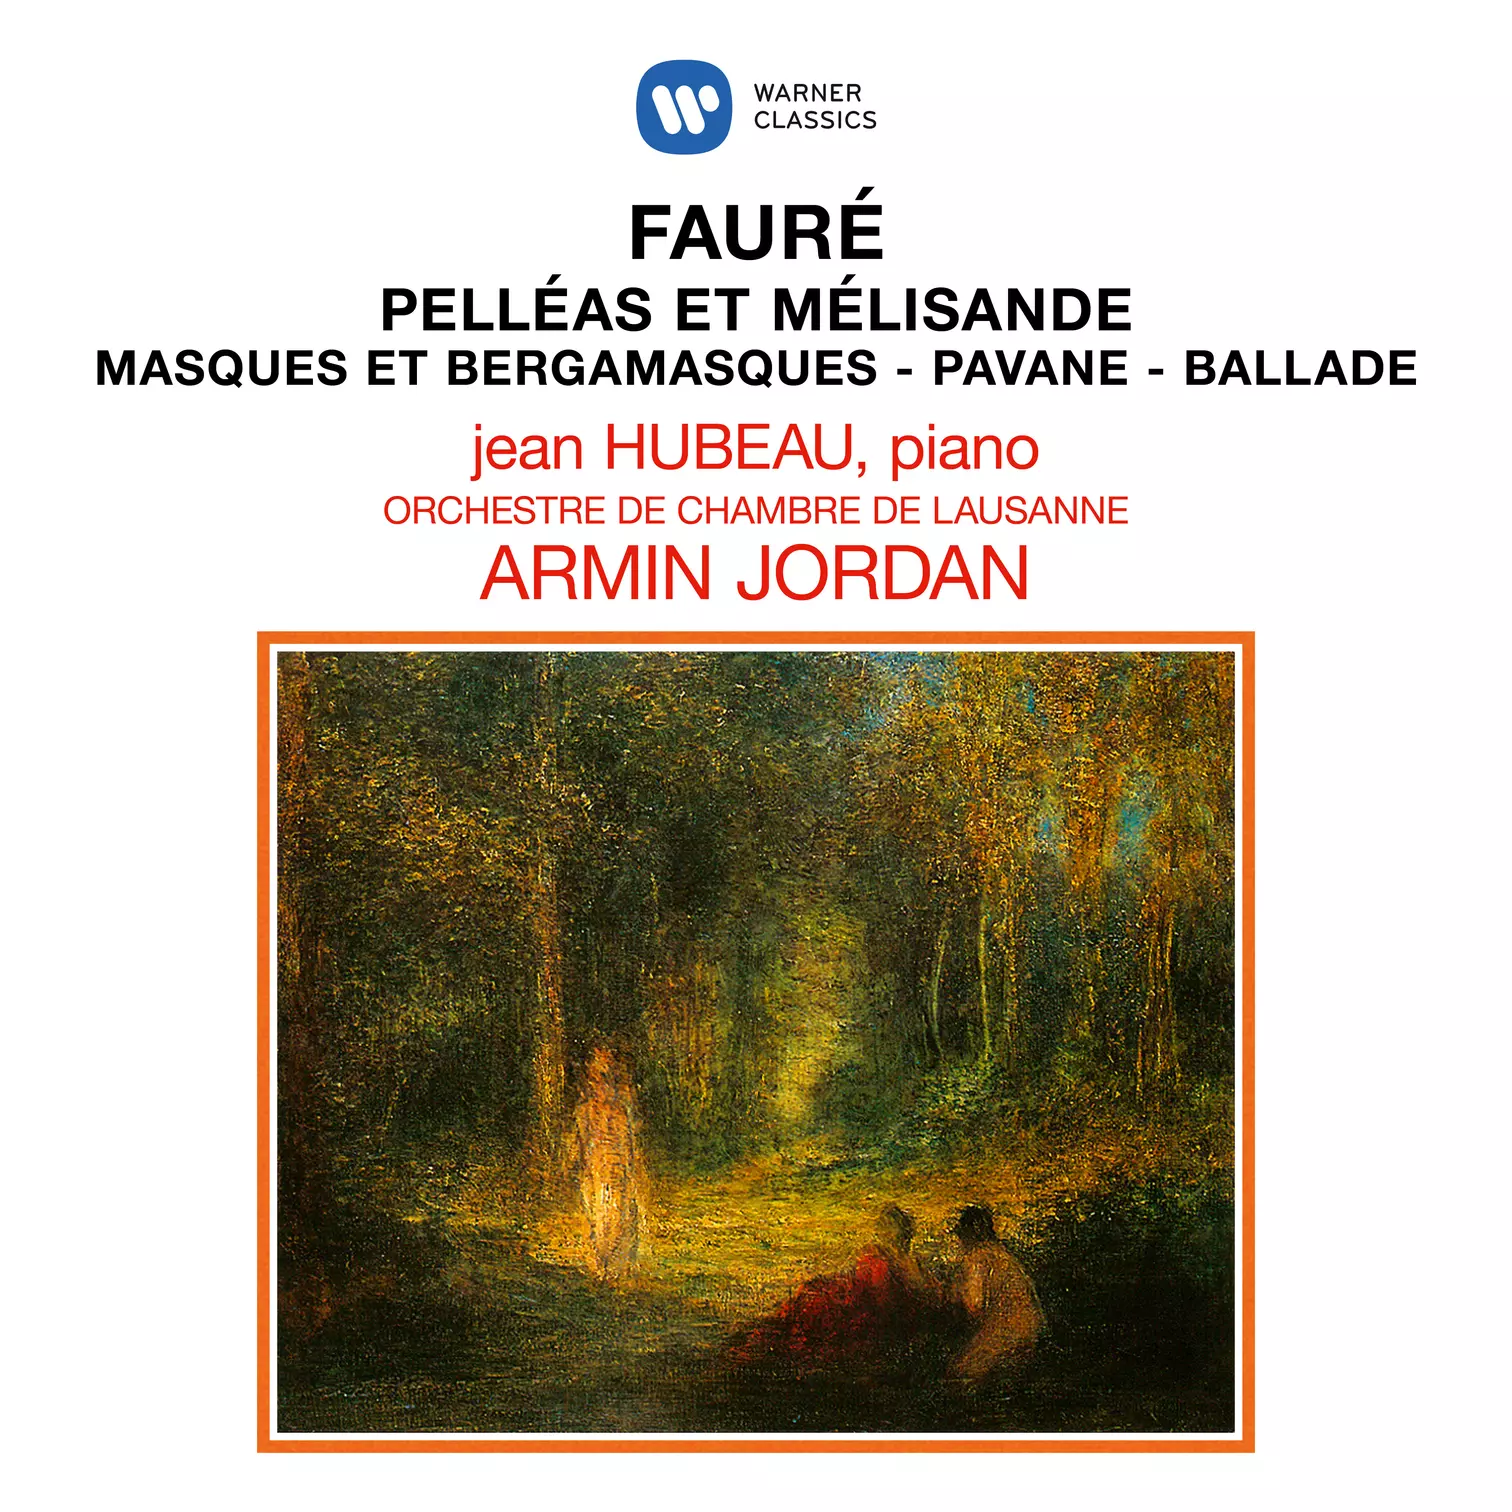 Fauré: Pelléas et Mélisande, Masques et bergamasques, Pavane & Ballade pour piano et orchestre